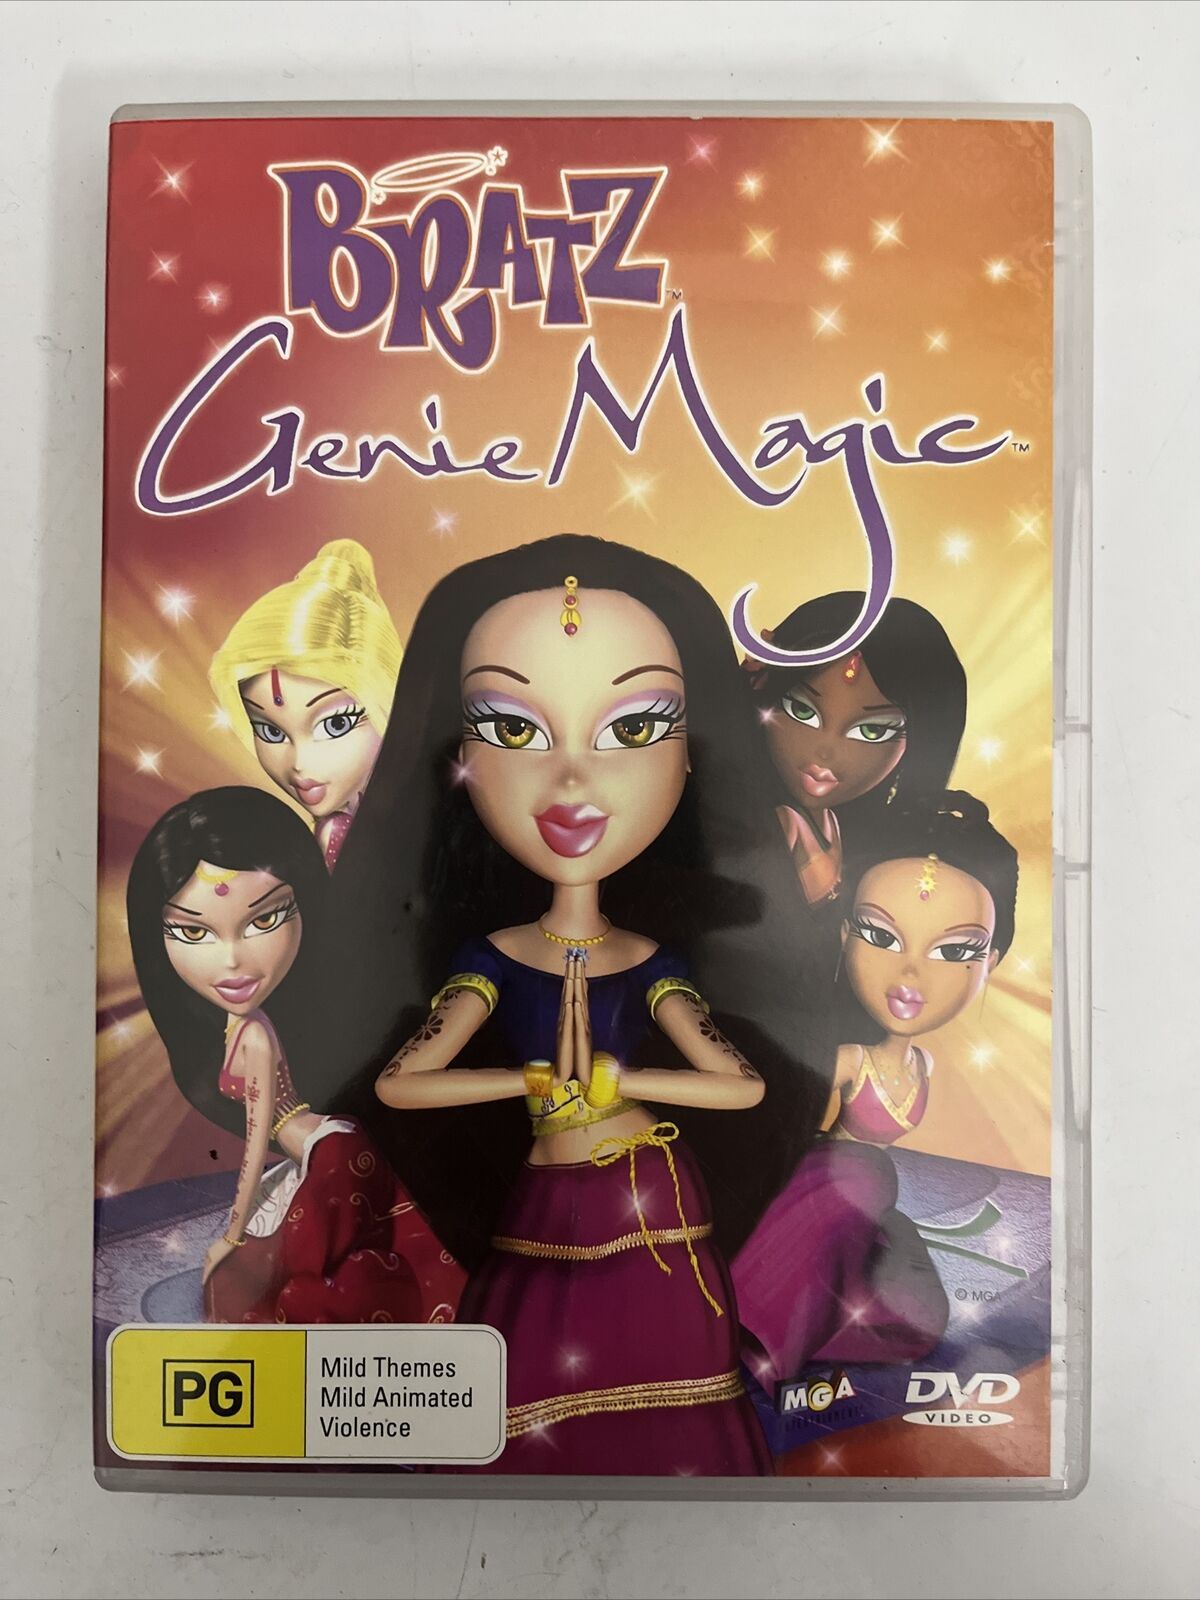 Bratz Genie Magic (DVD, 2005) Region 4